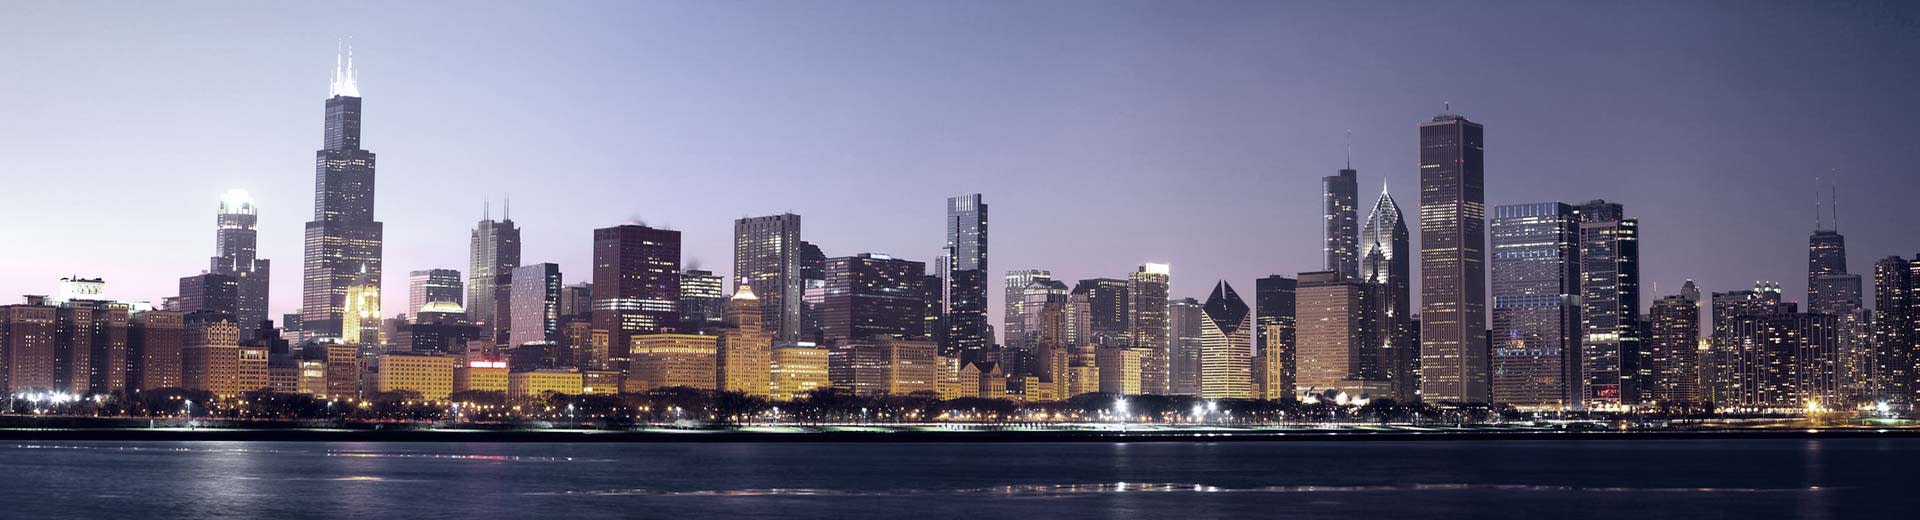 芝加哥的天际线照亮了上方的天空，许多高楼大厦的轮廓清晰可见。